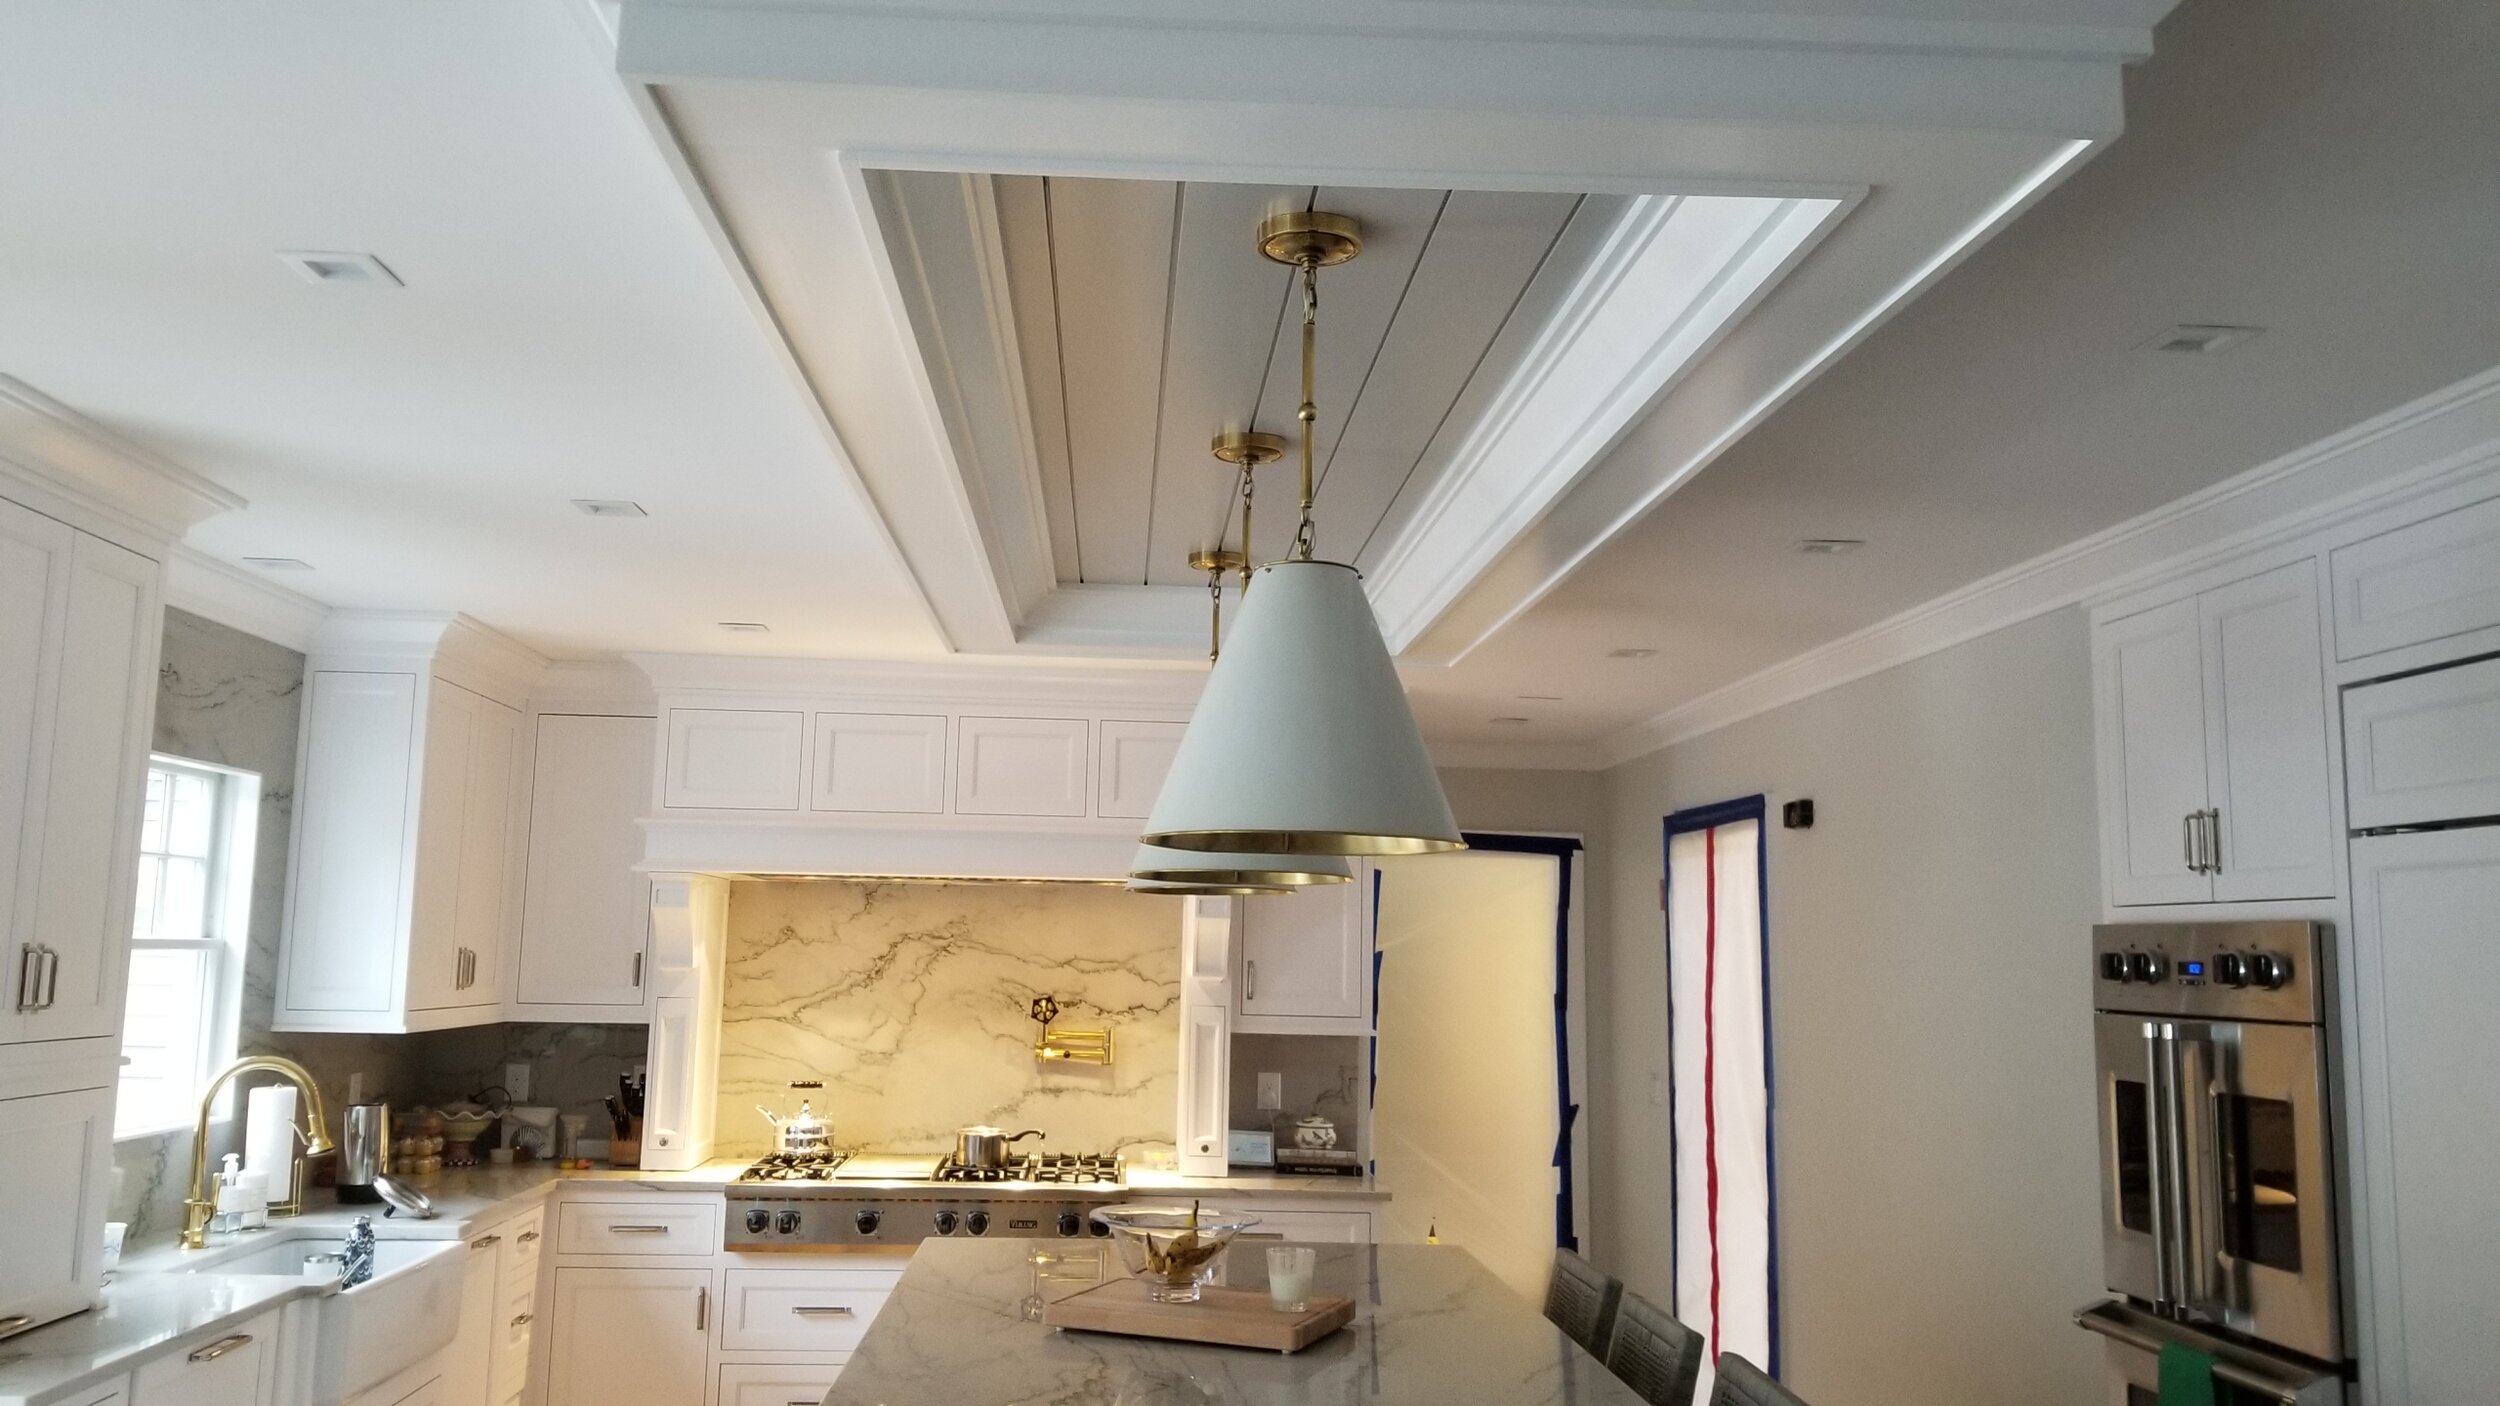 Coffer kitchen ceiling.jpg